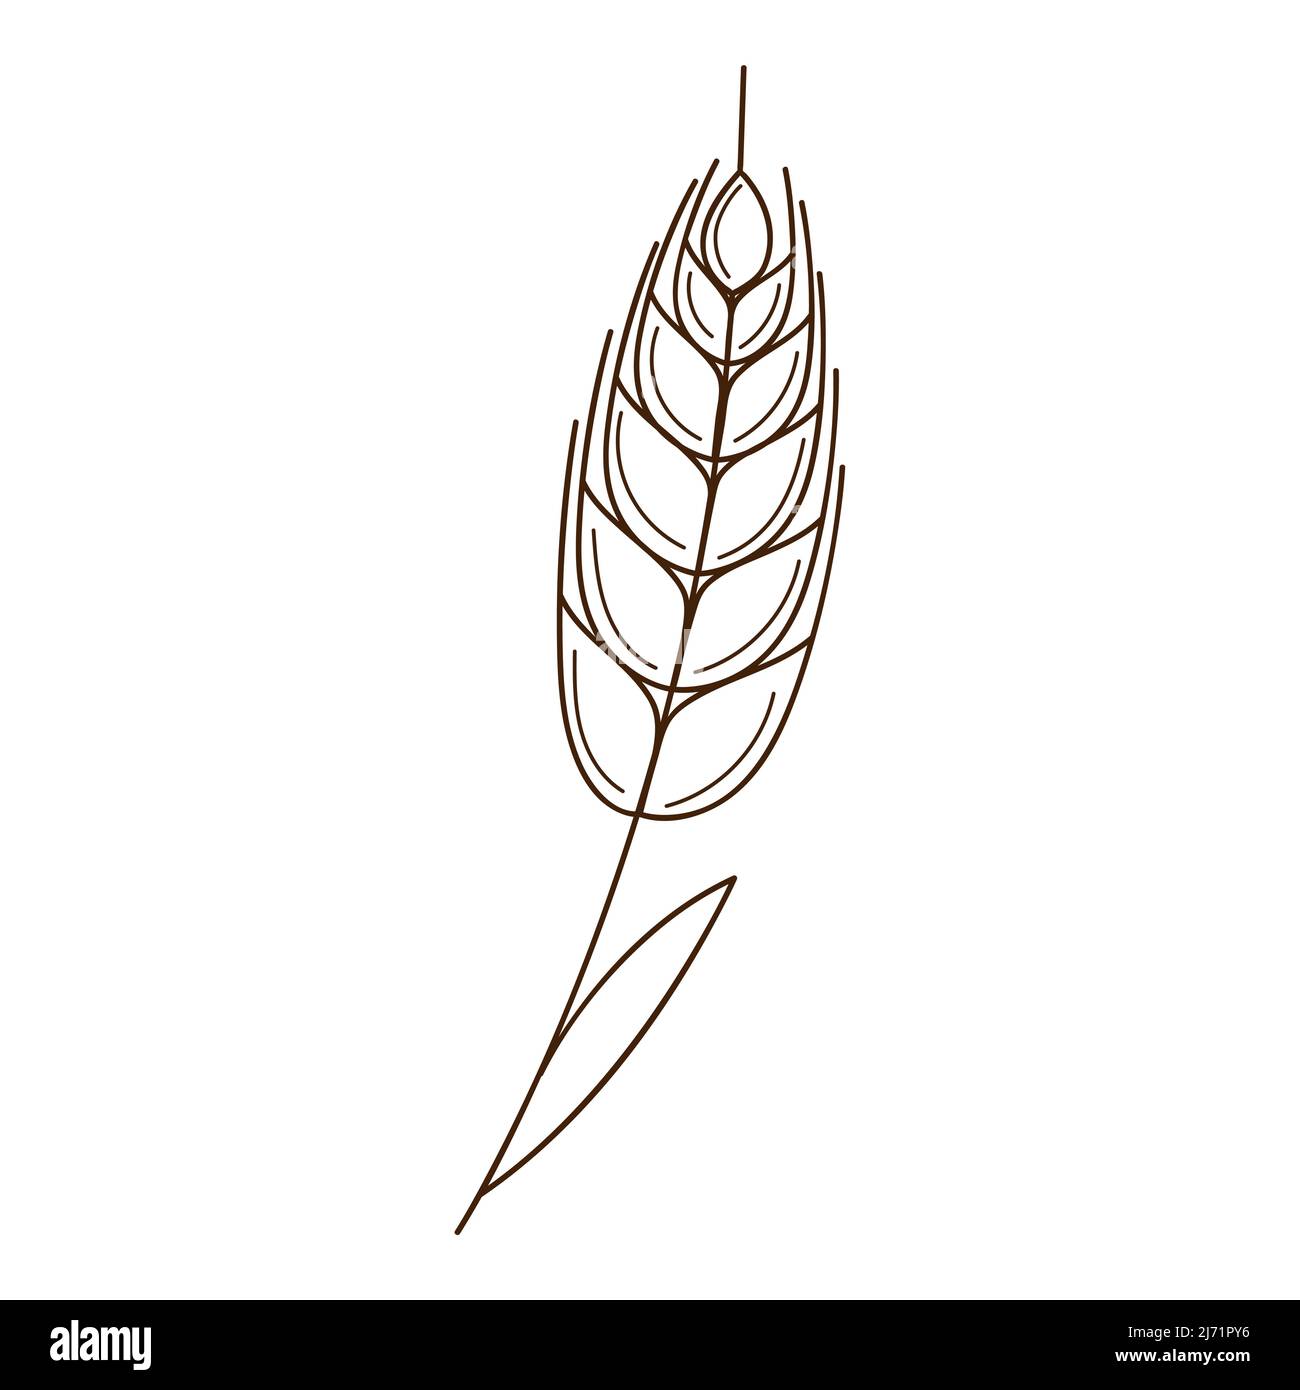 Weizen, Roggenspikelet. Ein Symbol des Herbstes, die Ernte. Designelement mit Umriss. Doodle, handgezeichnet. Flaches Design. Schwarz-weiße Vektorgrafik. Isola Stock Vektor